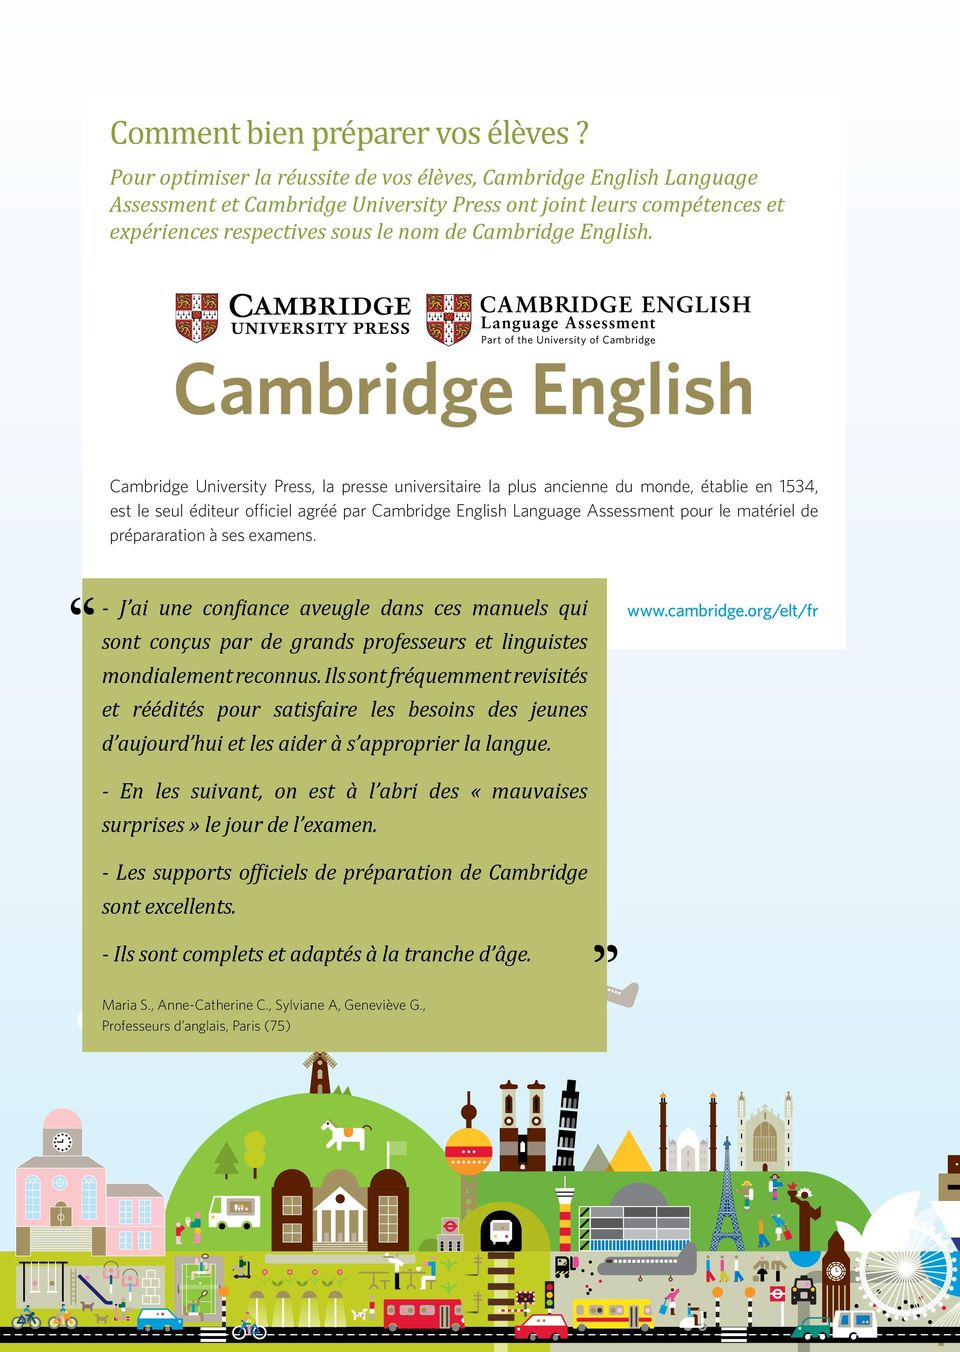 Cambridge University Press, la presse universitaire la plus ancienne du monde, établie en 1534, est le seul éditeur officiel agréé par Cambridge English Language Assessment pour le matériel de